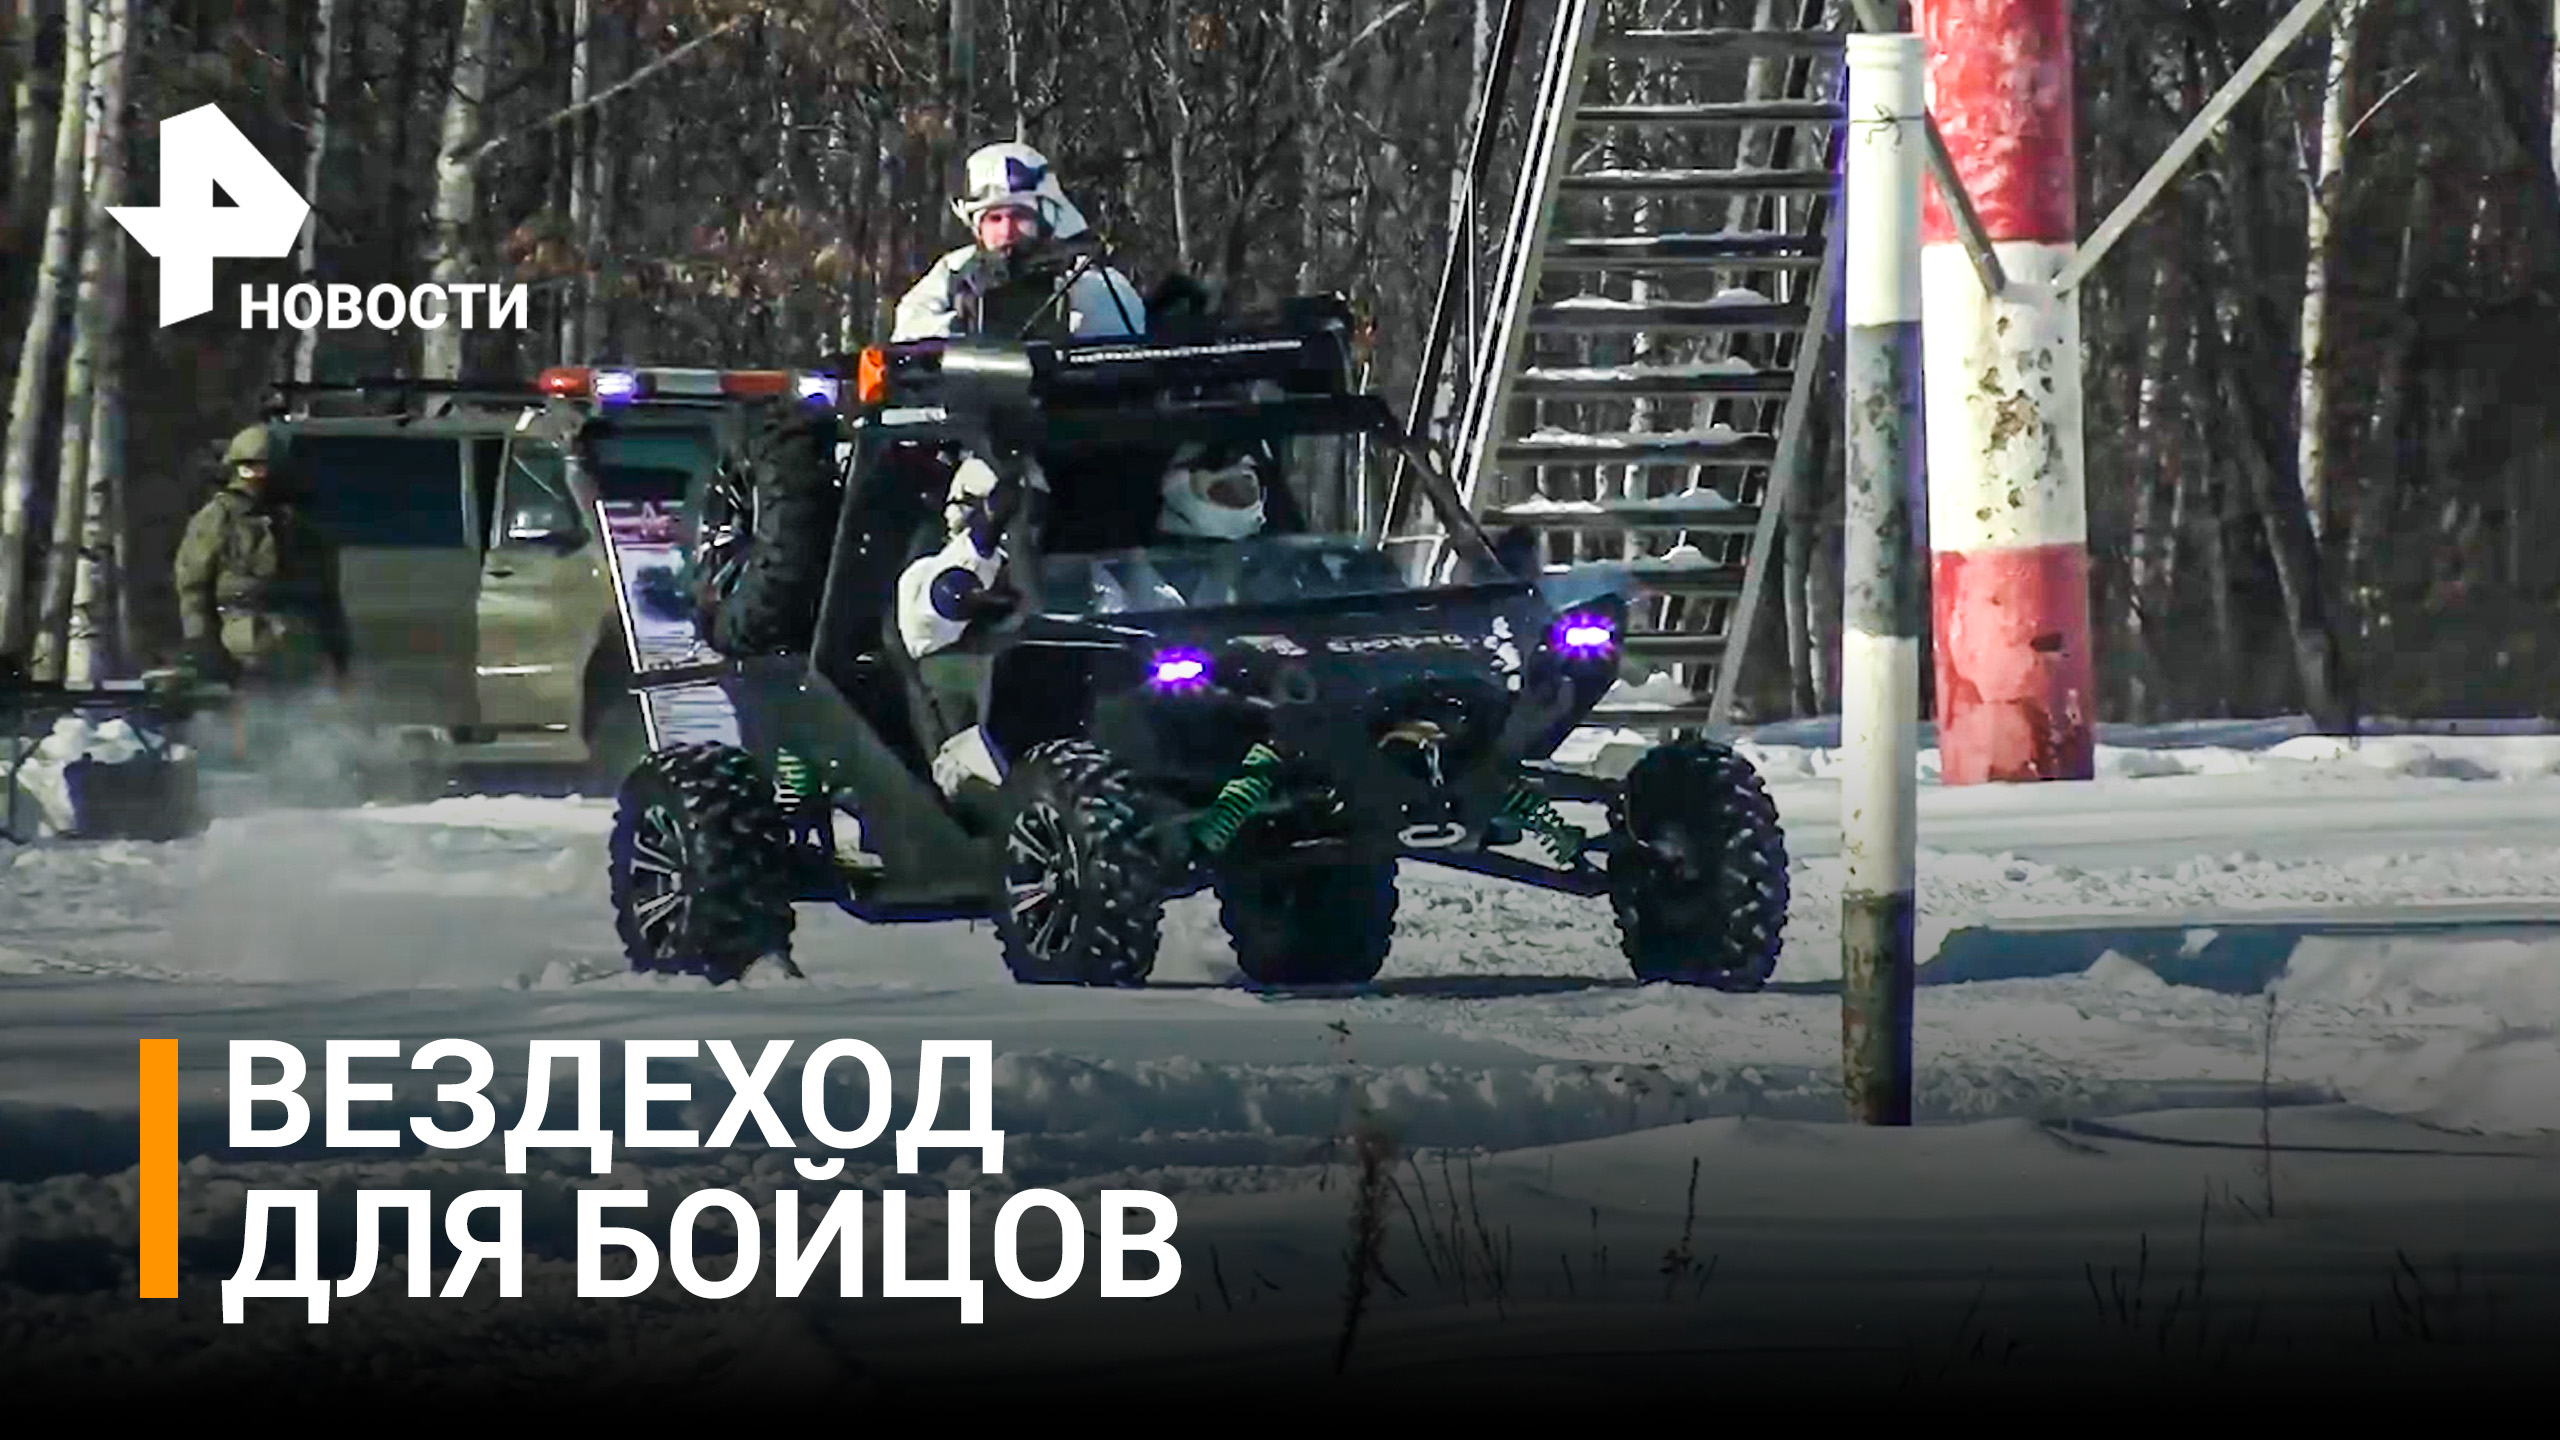 Партию багги высокой проходимости для бойцов в зоне спецоперации собрали инженеры в Хабаровске